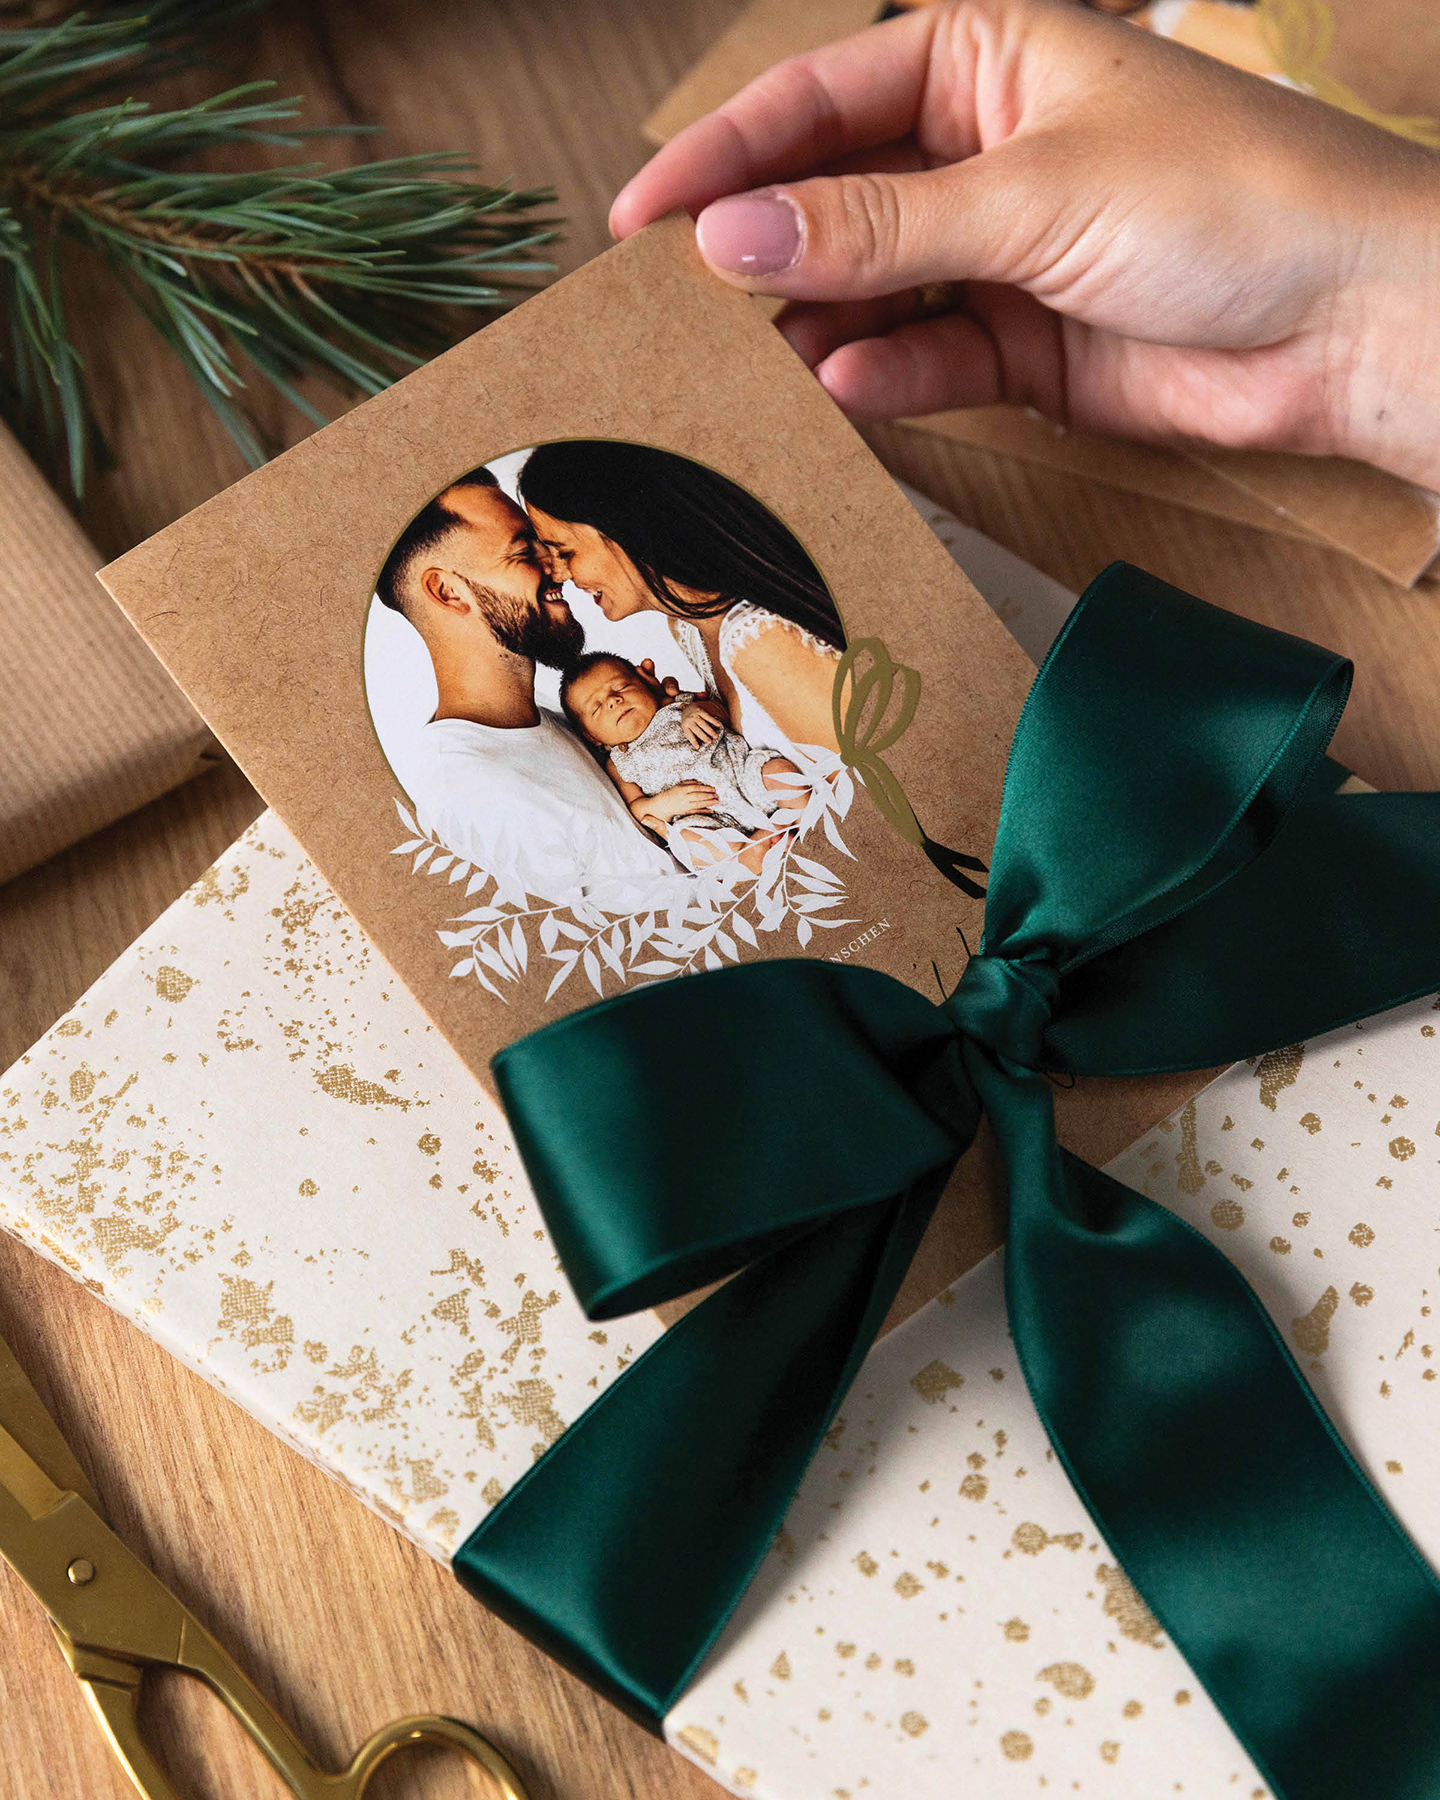 Weihnachtsgeschenk in gold verpackt mit grüner Schleife. Weihnachtskarte wird unter die Schleife geschoben.